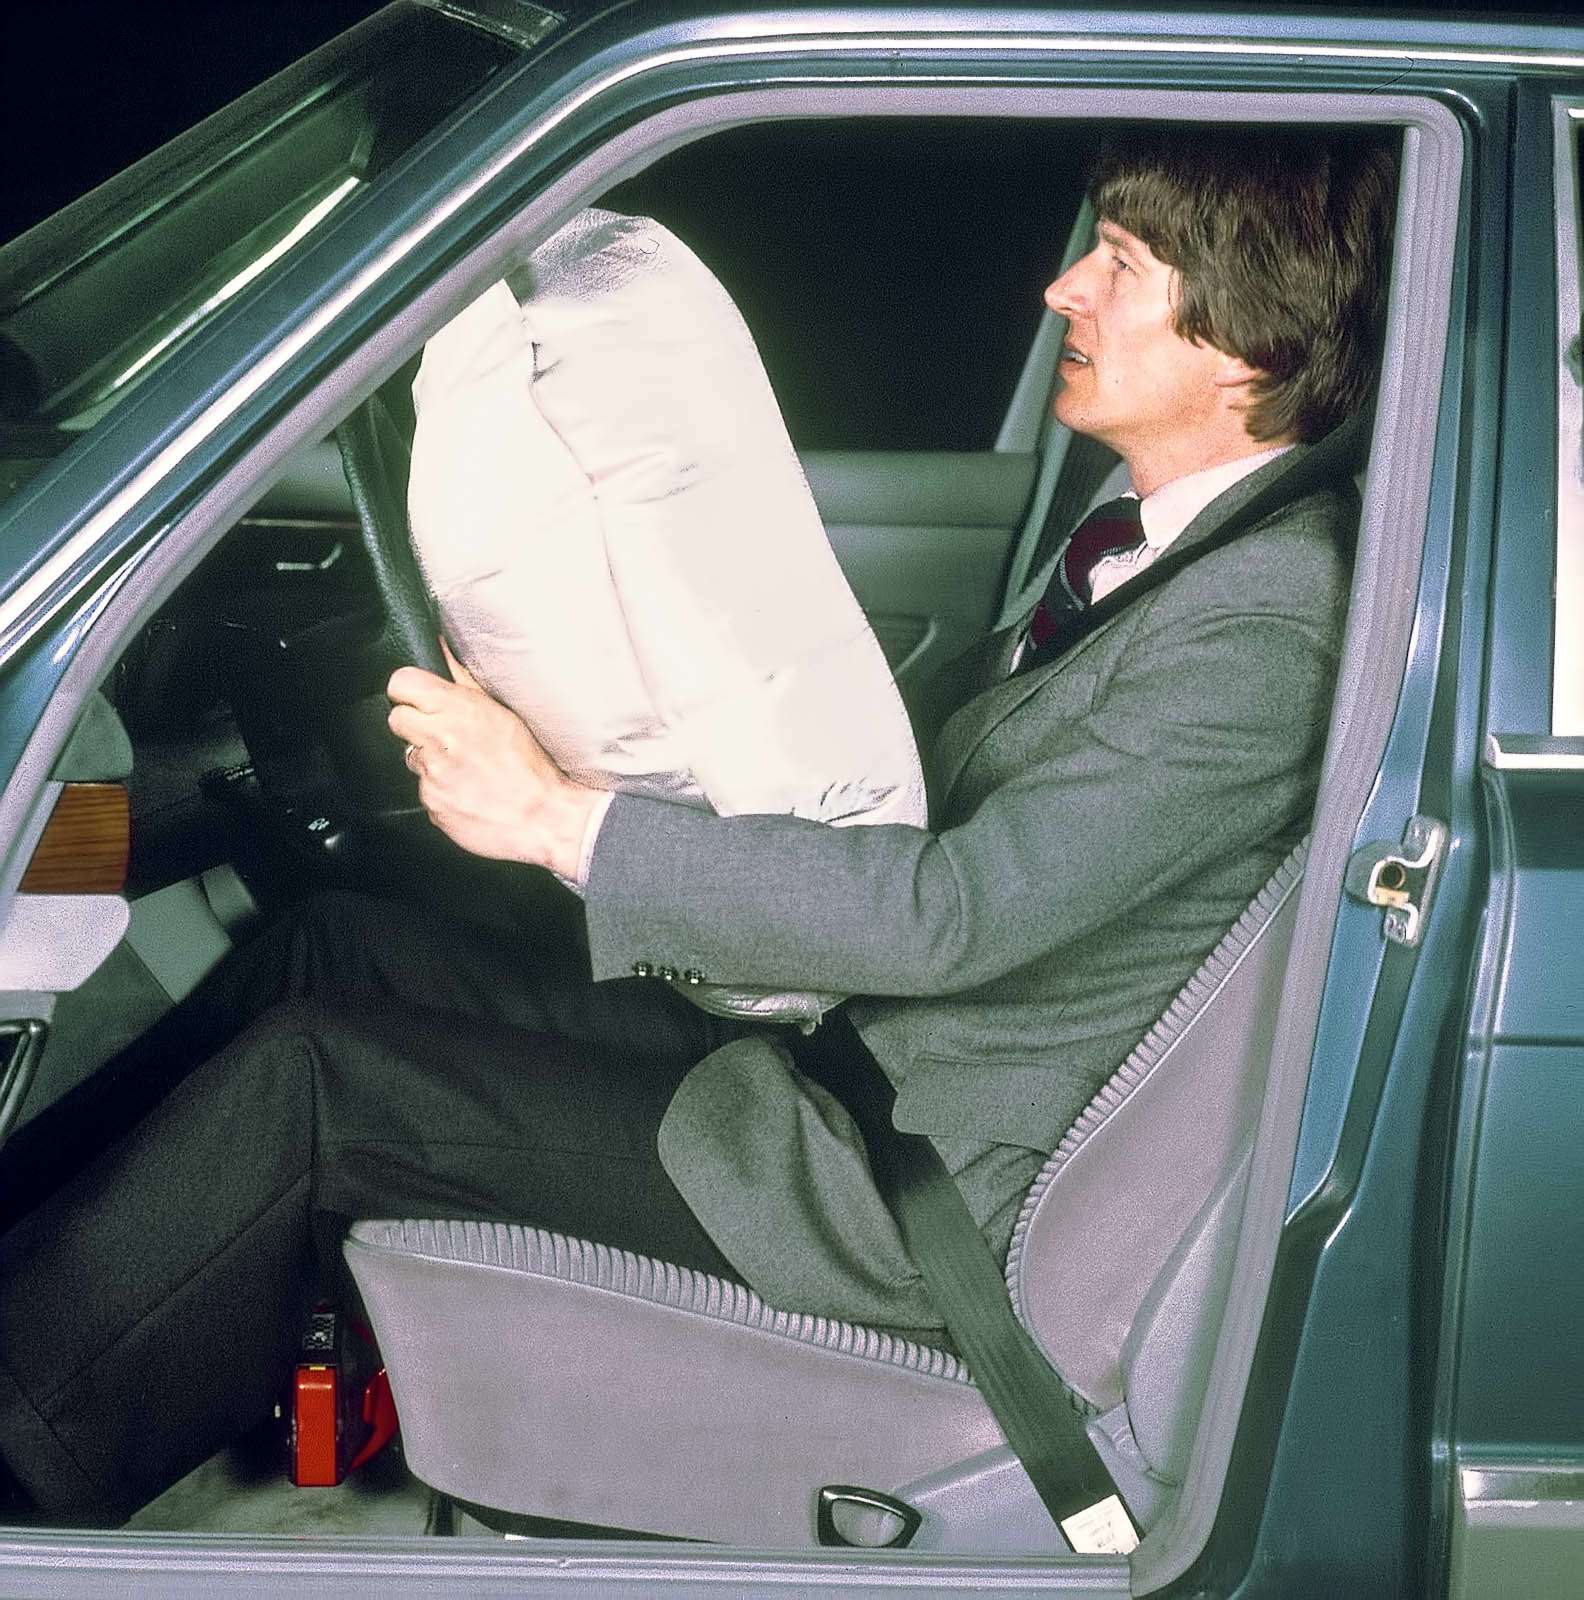 Mercedes-Benz в 1981 году предложил подушку безопасности в качестве опции для S-класса с индексом W126. При этом во время столкновения сначала затягивались ремни безопасности. Таким образом, впервые подушка безопасности была предложена не как замена, а как дополнение к ремням.